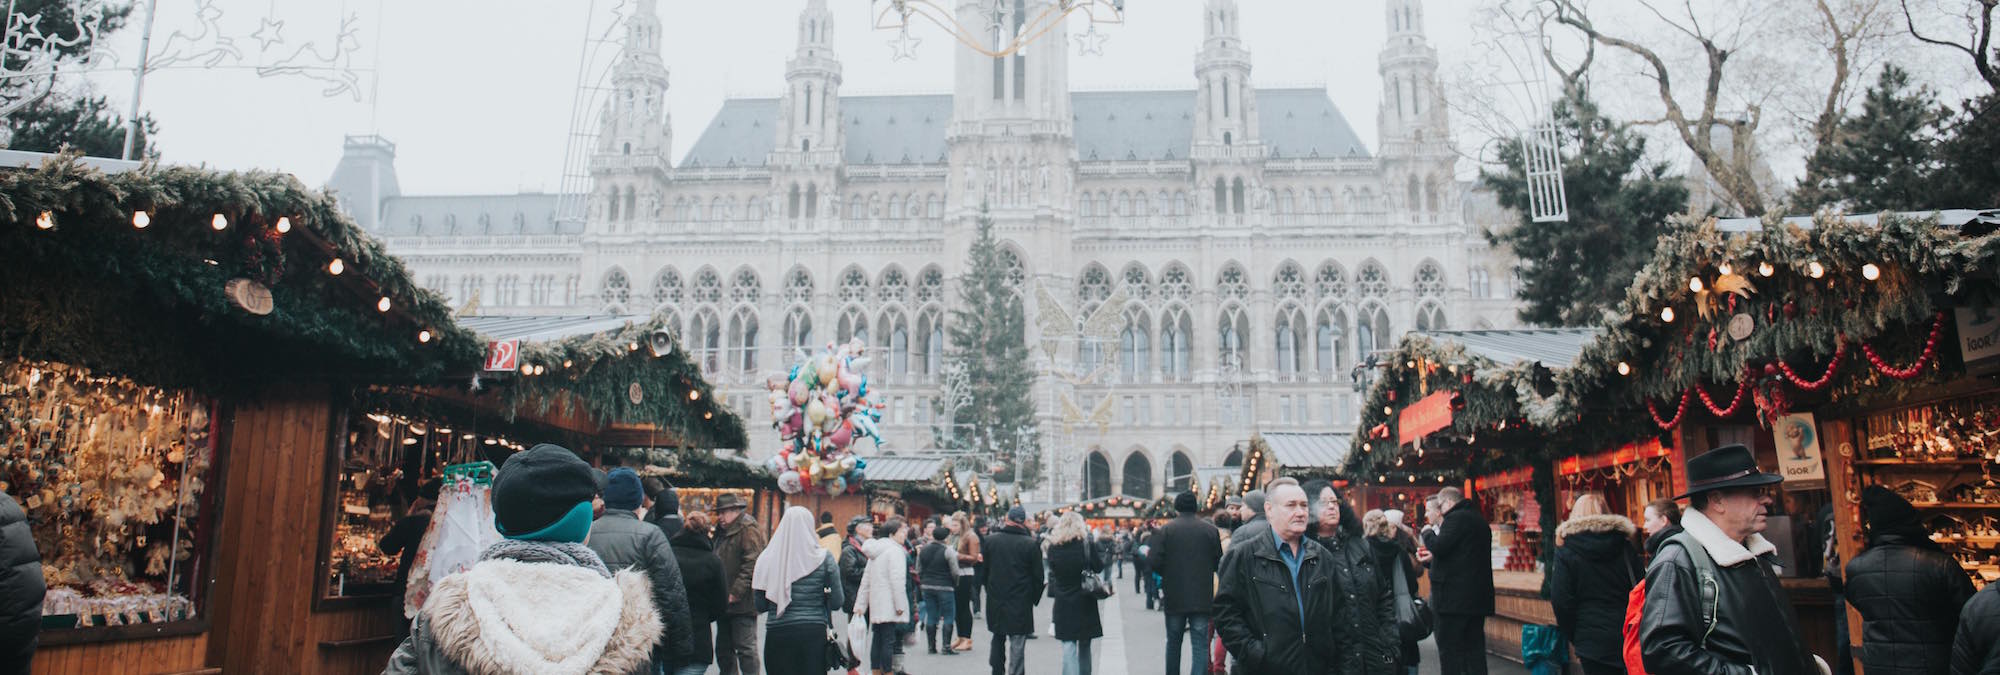 Weihnachtmarkt in Wien